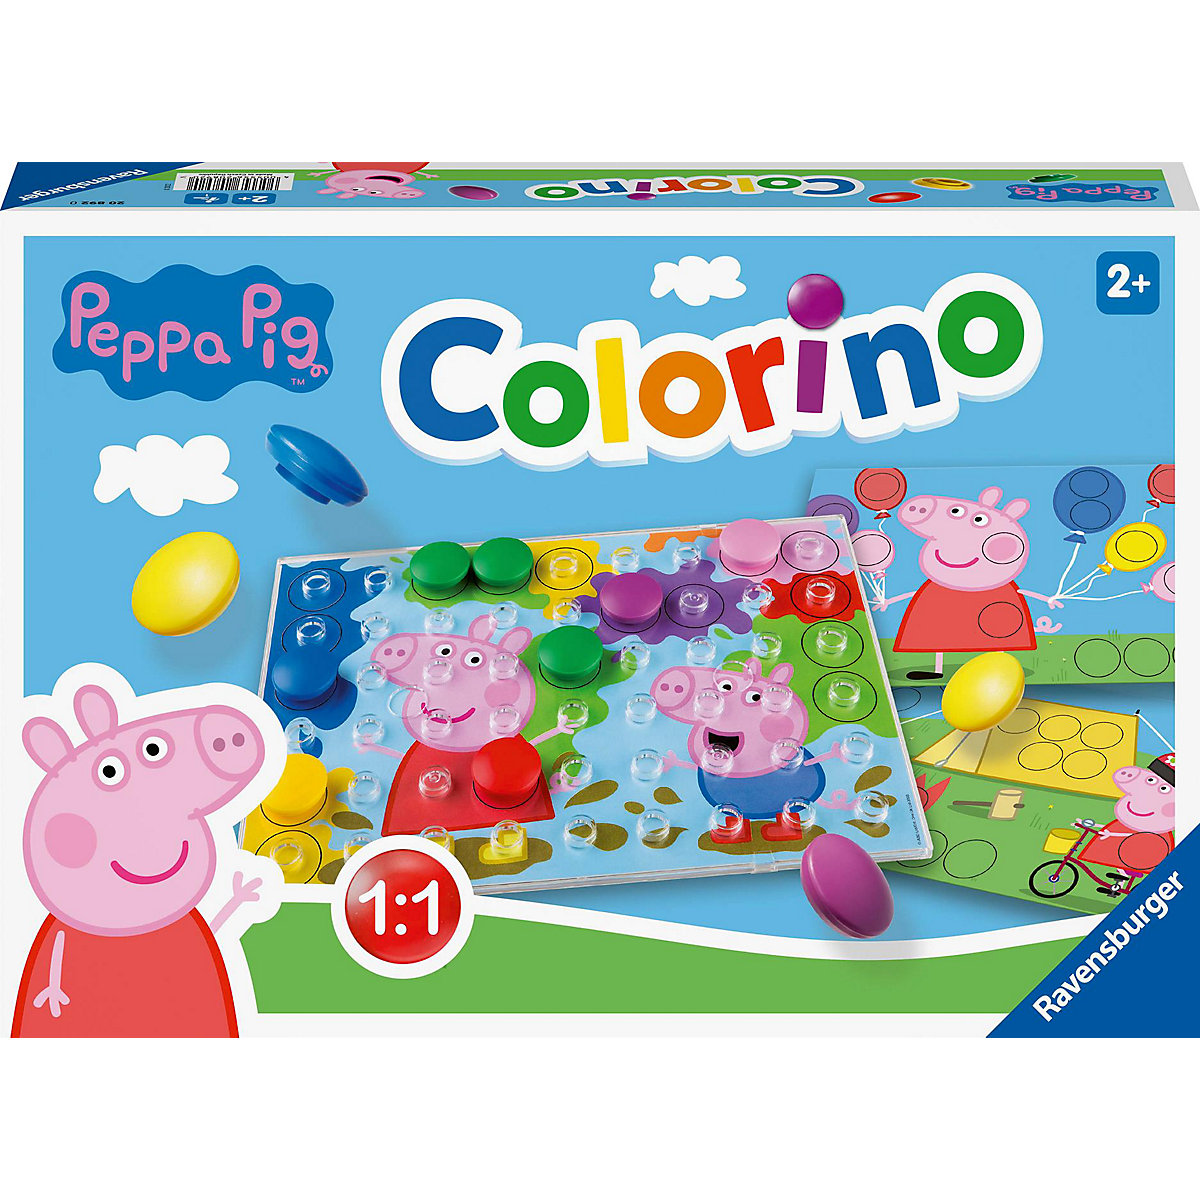 Ravensburger Kinderspiele 20892 Peppa Pig Colorino Kinderspiel zum Farbenlernen Mosaik Steckspiel ab 2 Jahre